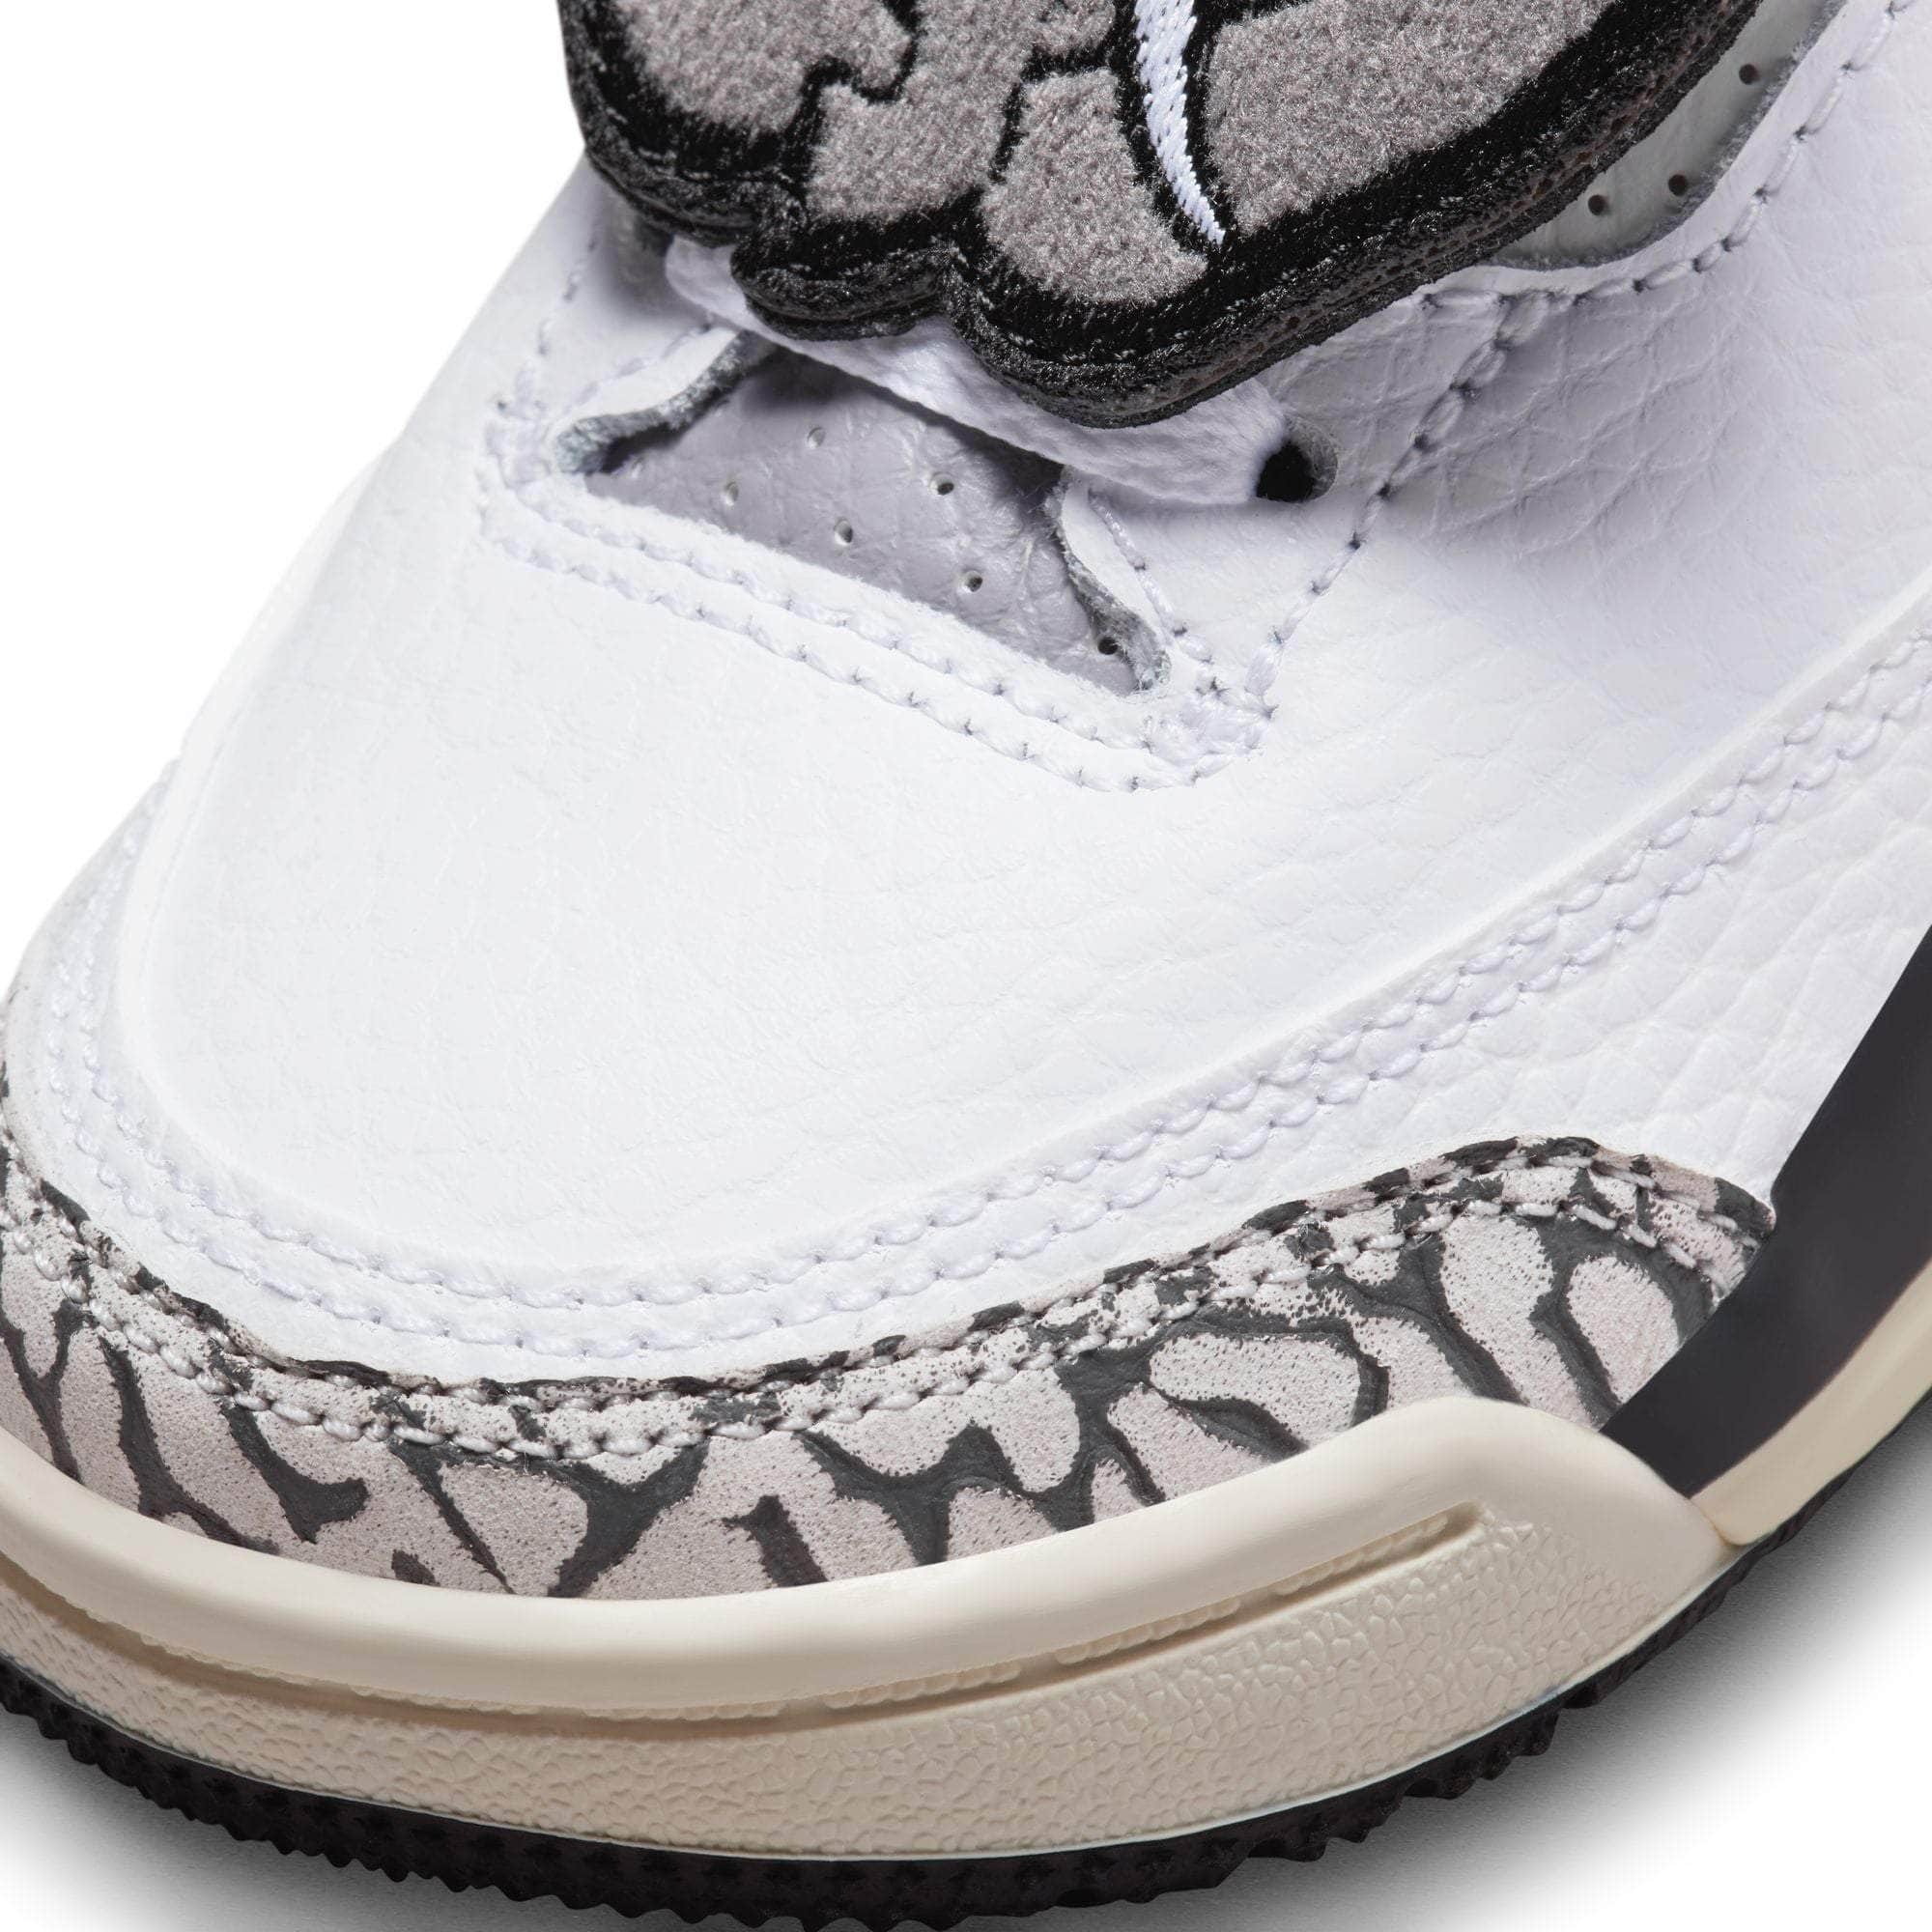 Air Jordan FOOTWEAR Air Jordan 3 Retro "Hide N Sneak" - Toddler's